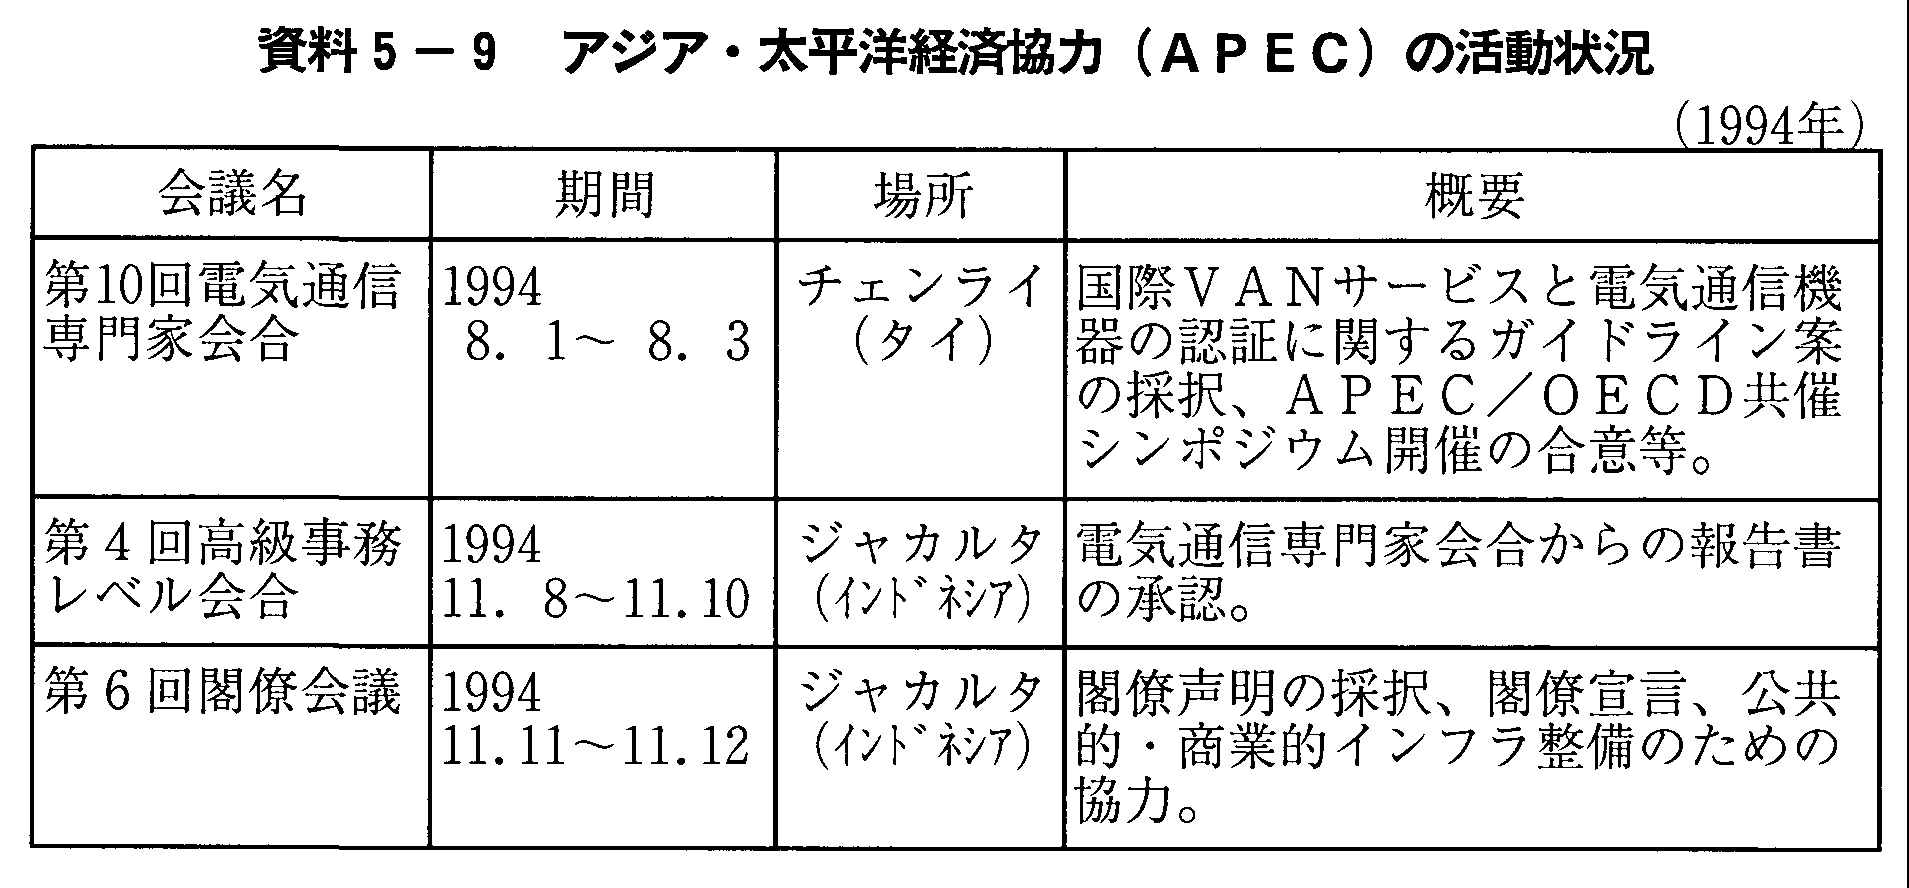 資料5-9 アジア・太平洋経済協力(APEC)の活動状況(1994年)